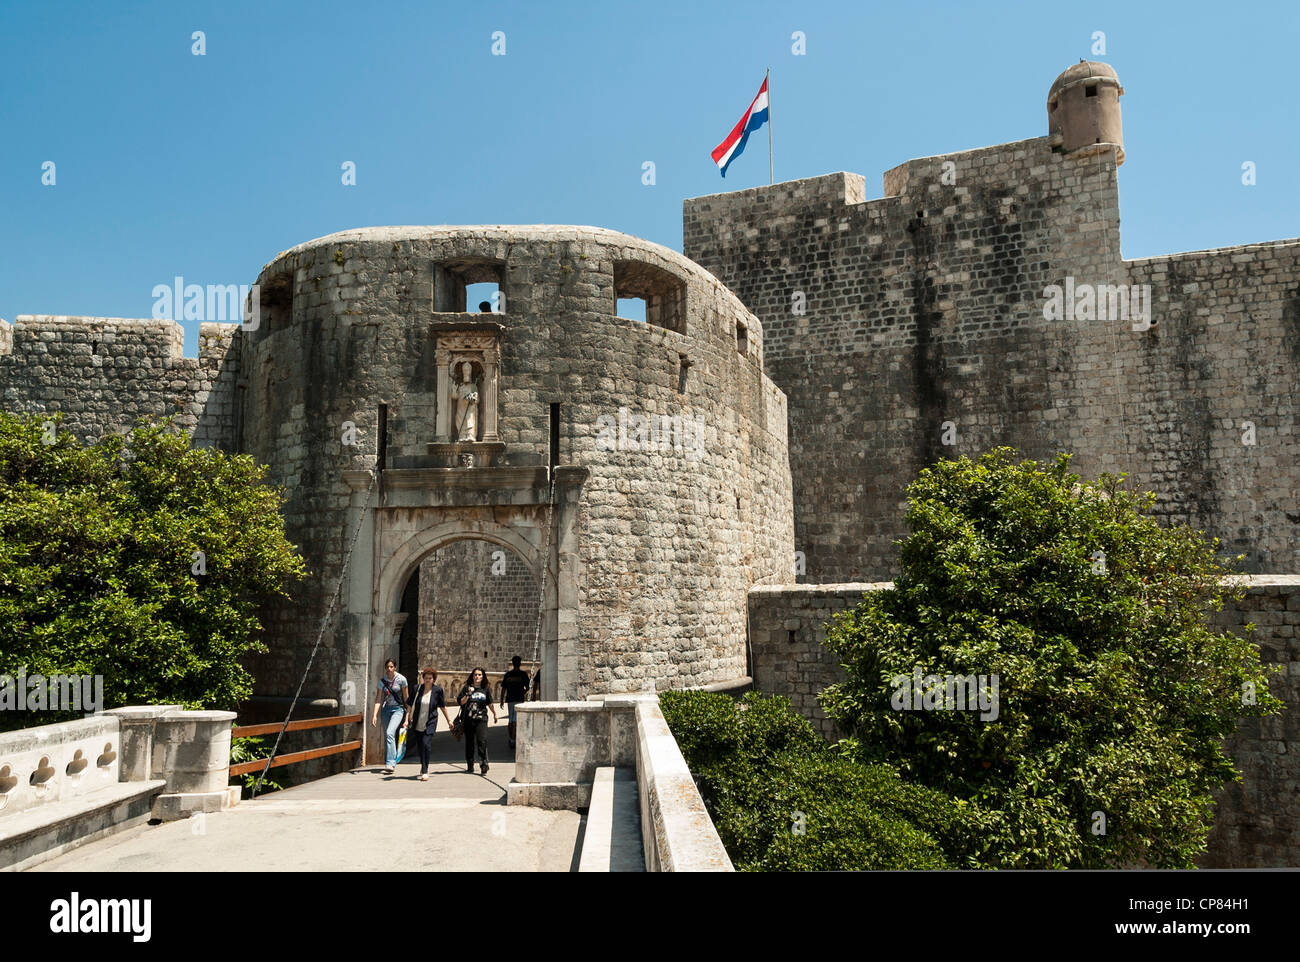 Palo porta d'ingresso alla città vecchia con le mura della città di Dubrovnik, Croazia, Europa Foto Stock